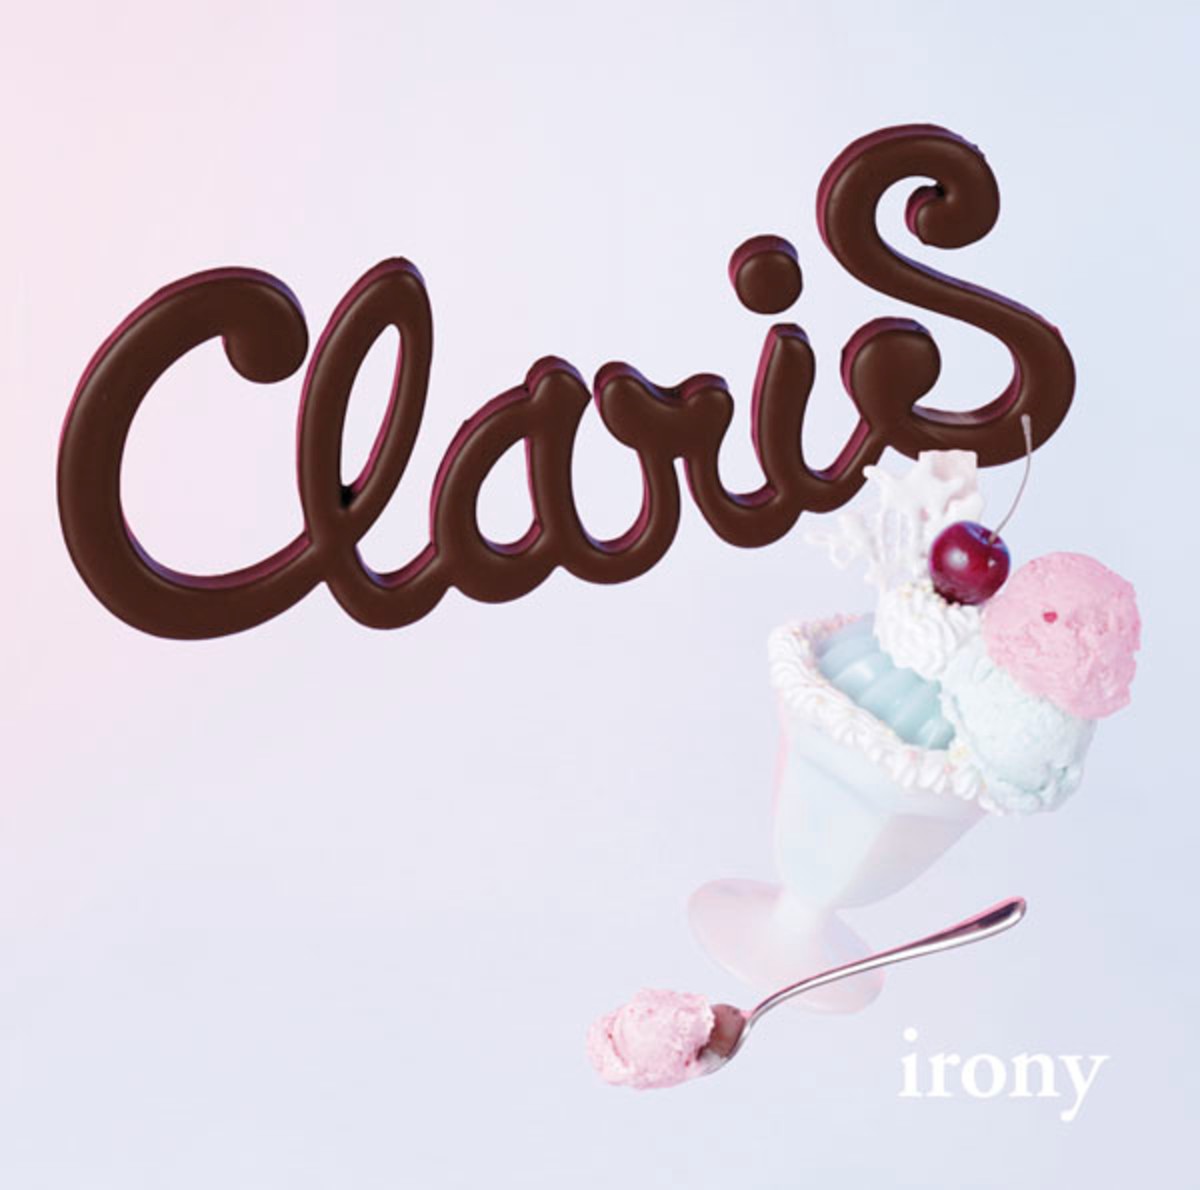 ClariS — irony cover artwork